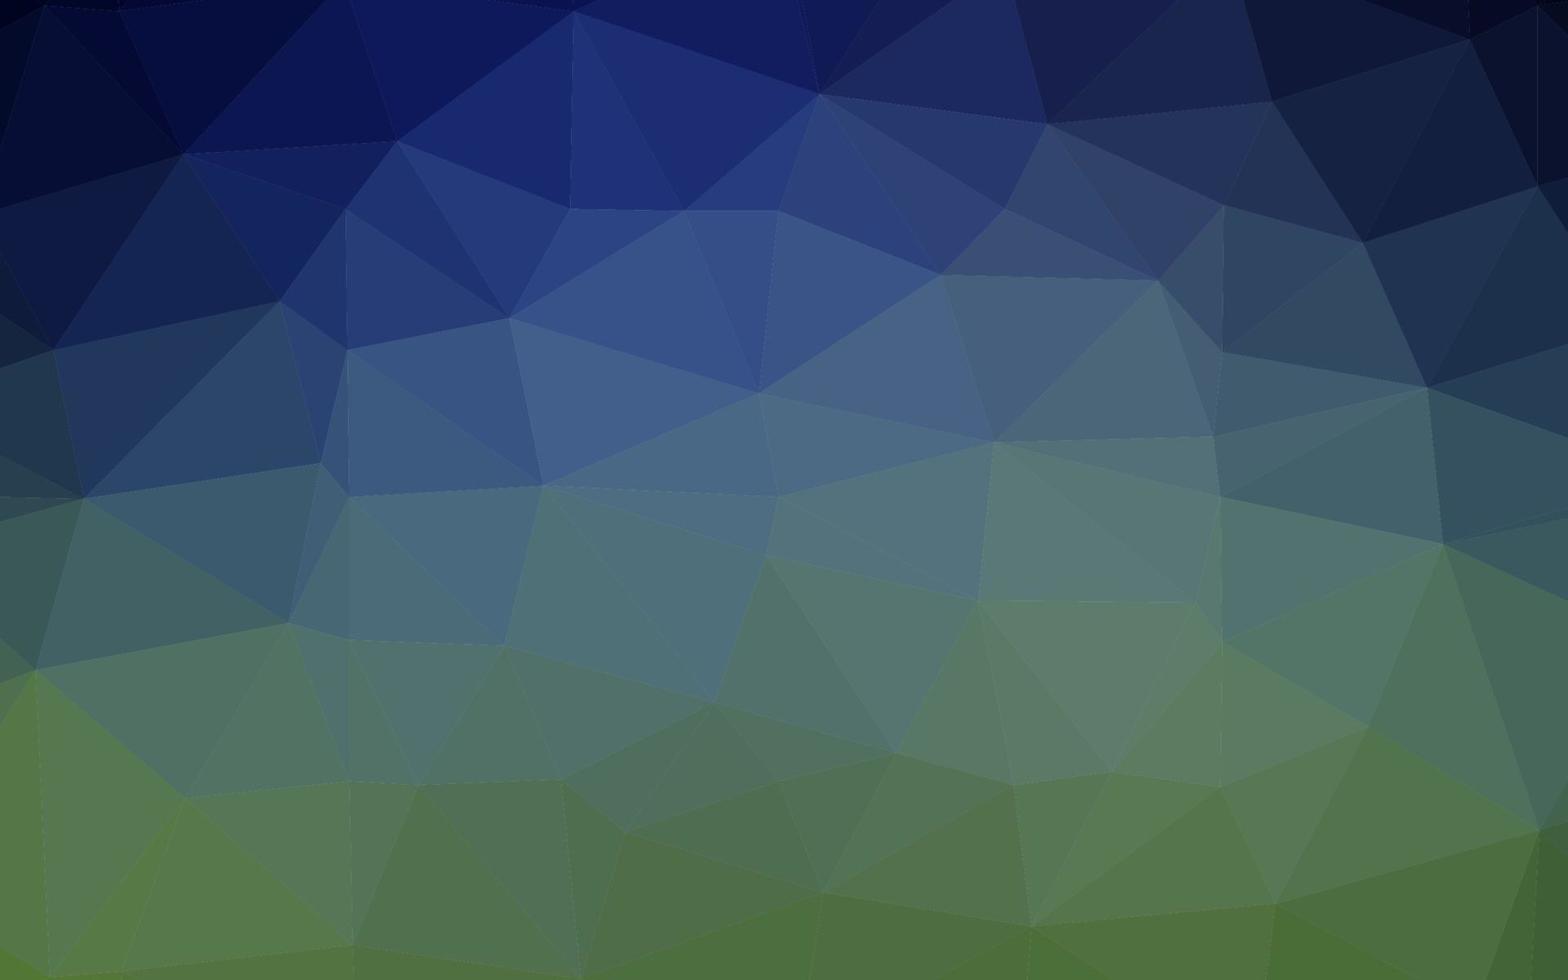 modelo de triângulo embaçado vetor azul escuro e verde.